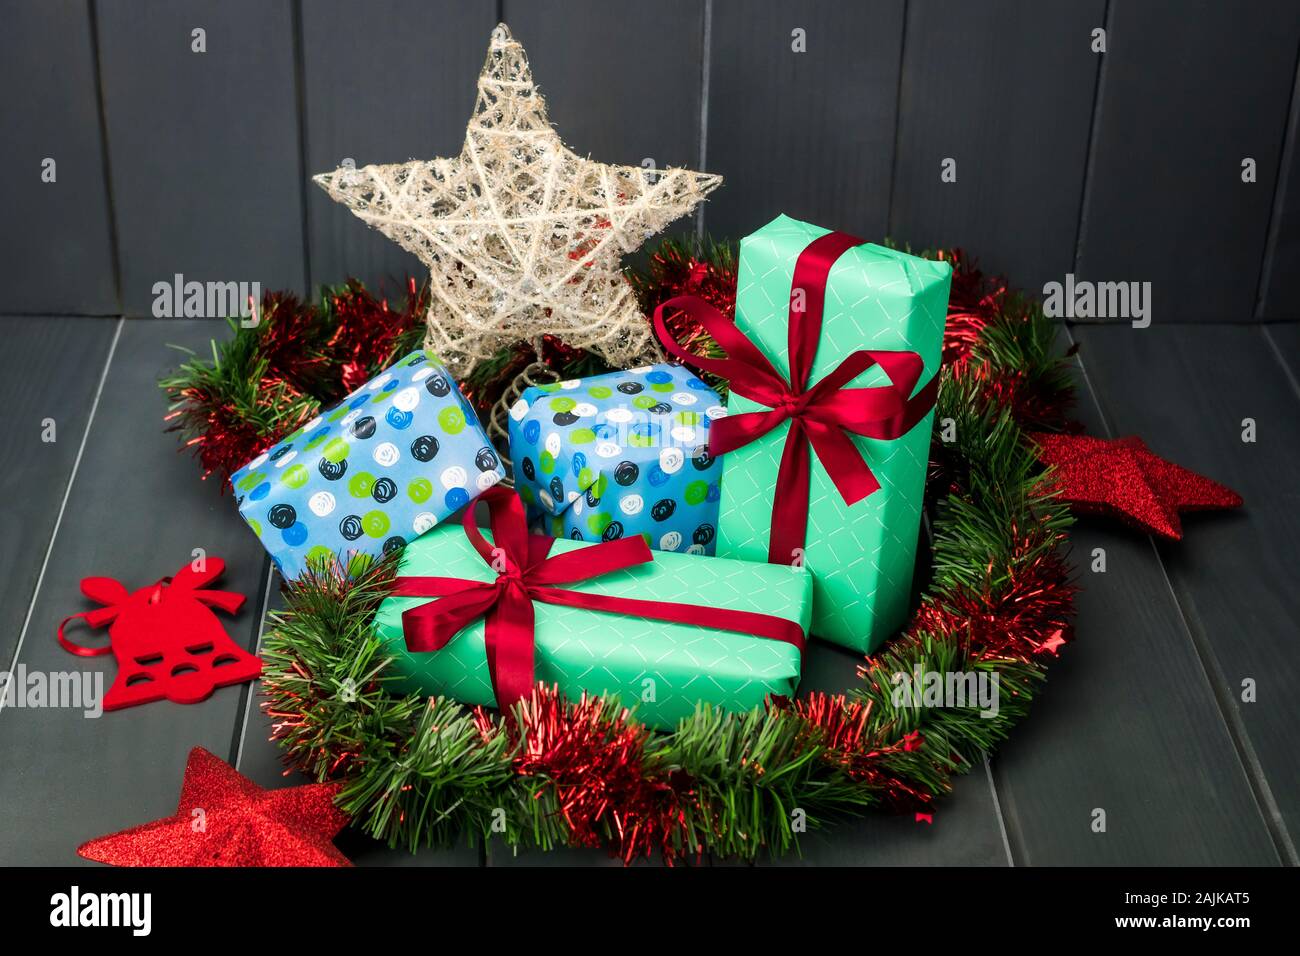 Weihnachten Geschenke verpackt und mit Geschenkpapier und Tuch Krawatten, grüne und rote Lametta und Gold Star auf dunklem Hintergrund Stockfoto